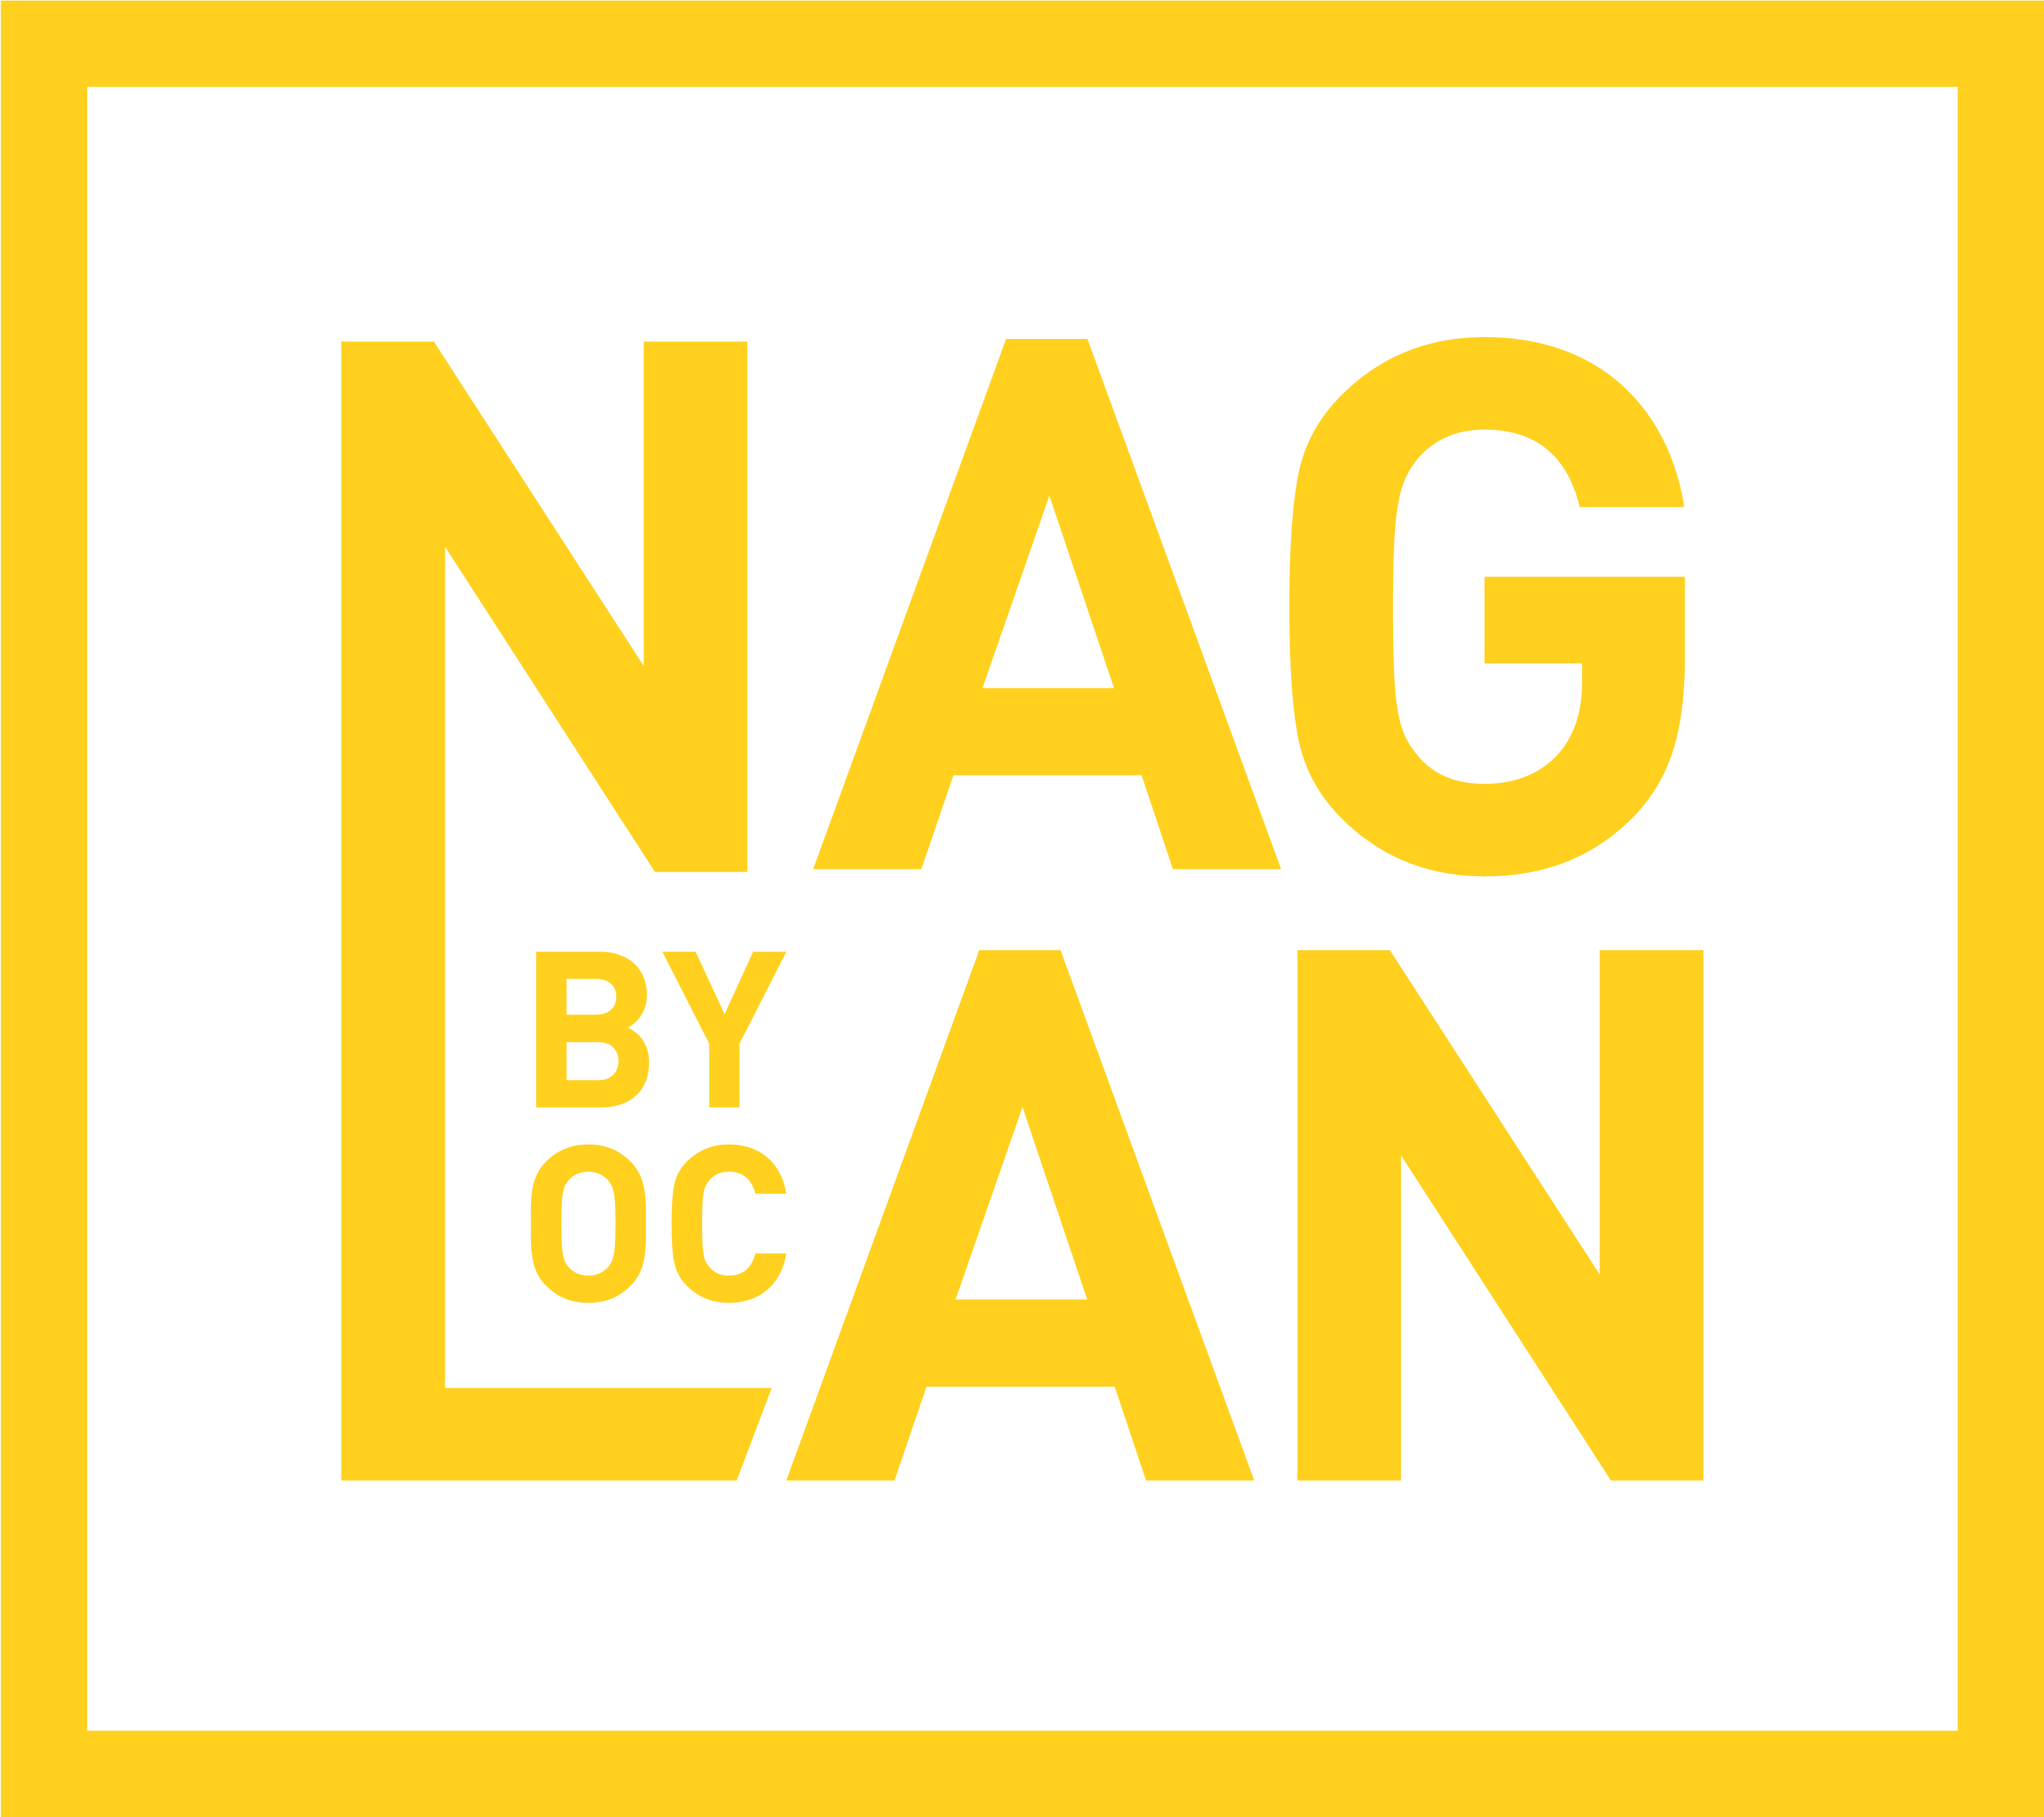 HD Rage Nag Lan Rush Mari0 Unlimited